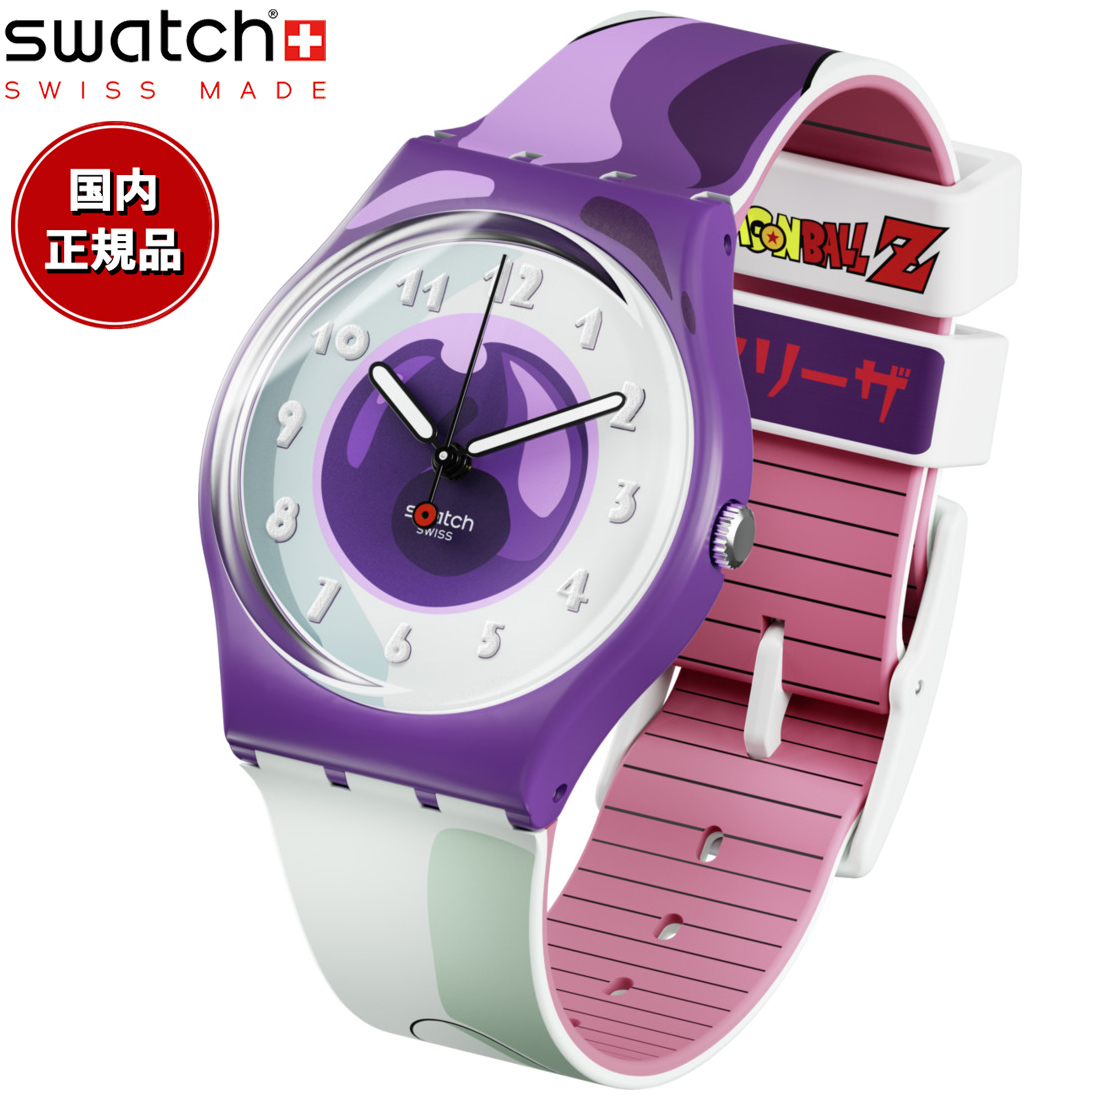 [スウォッチ] 腕時計 スウォッチ FRIEZA X SWATCH Gent GZ359 ホワイト メンズウォッチの商品画像